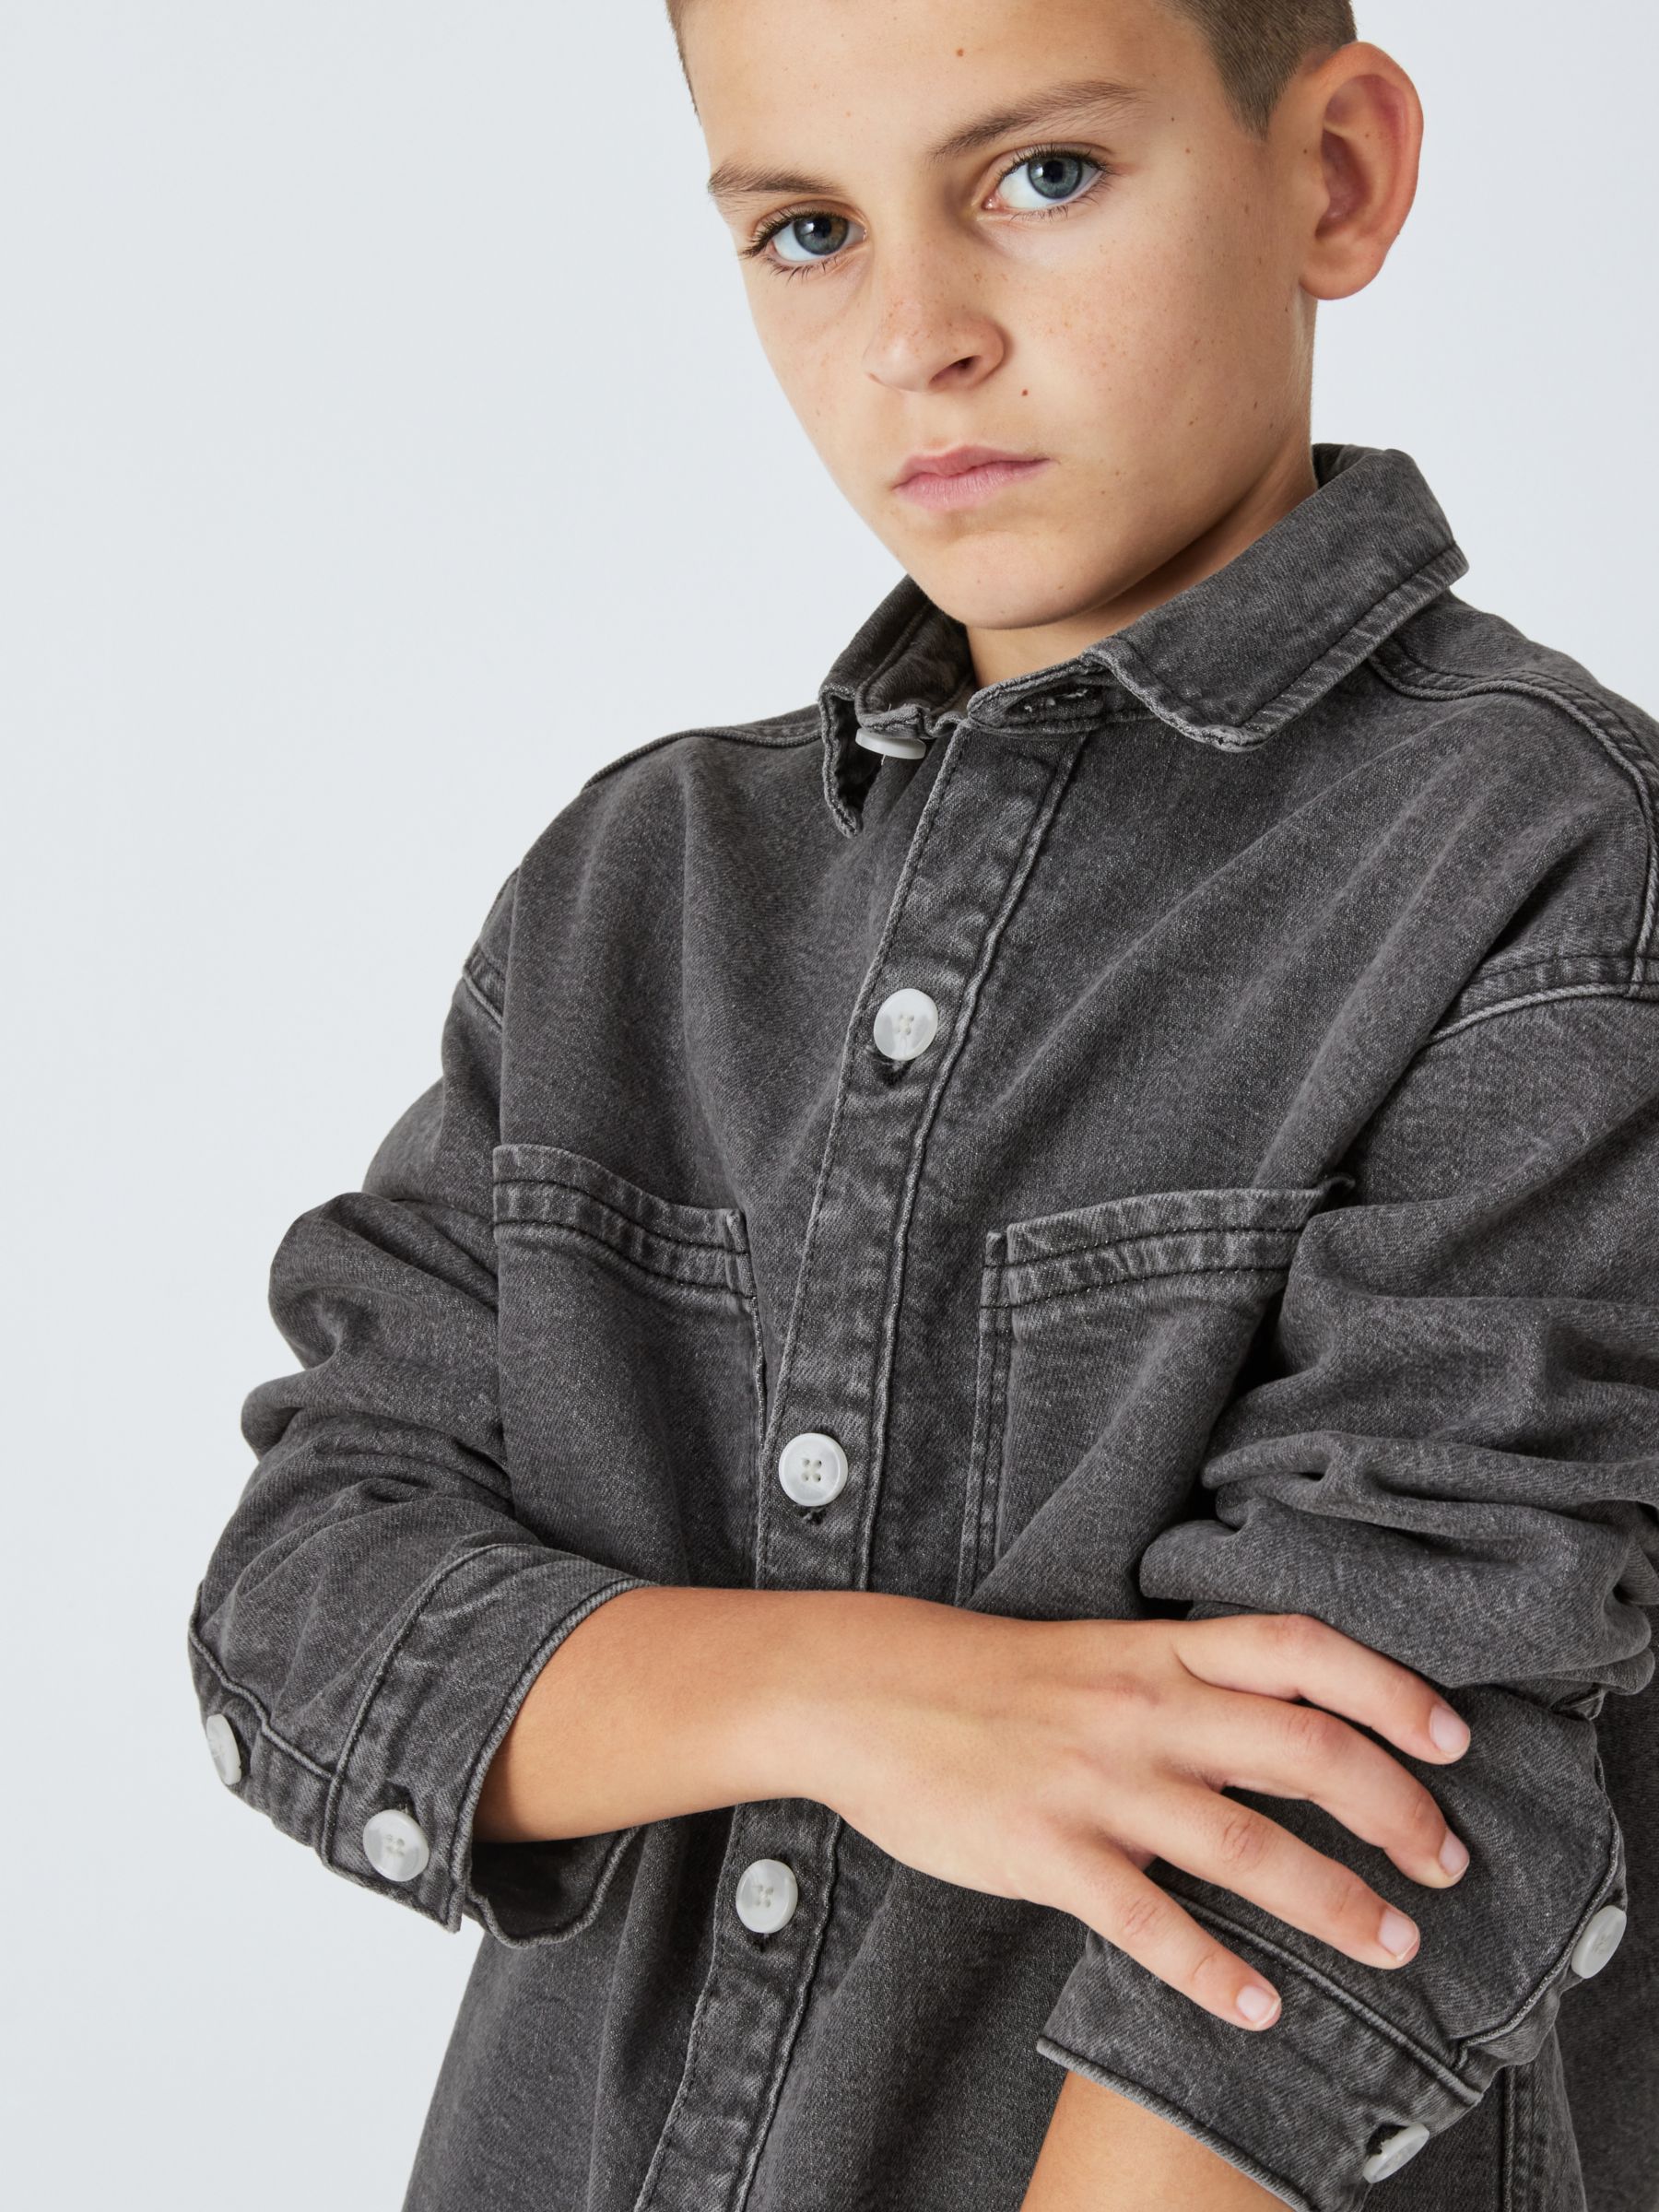 Buy John Lewis Kids' Denim Shirt, Grey Online at johnlewis.com